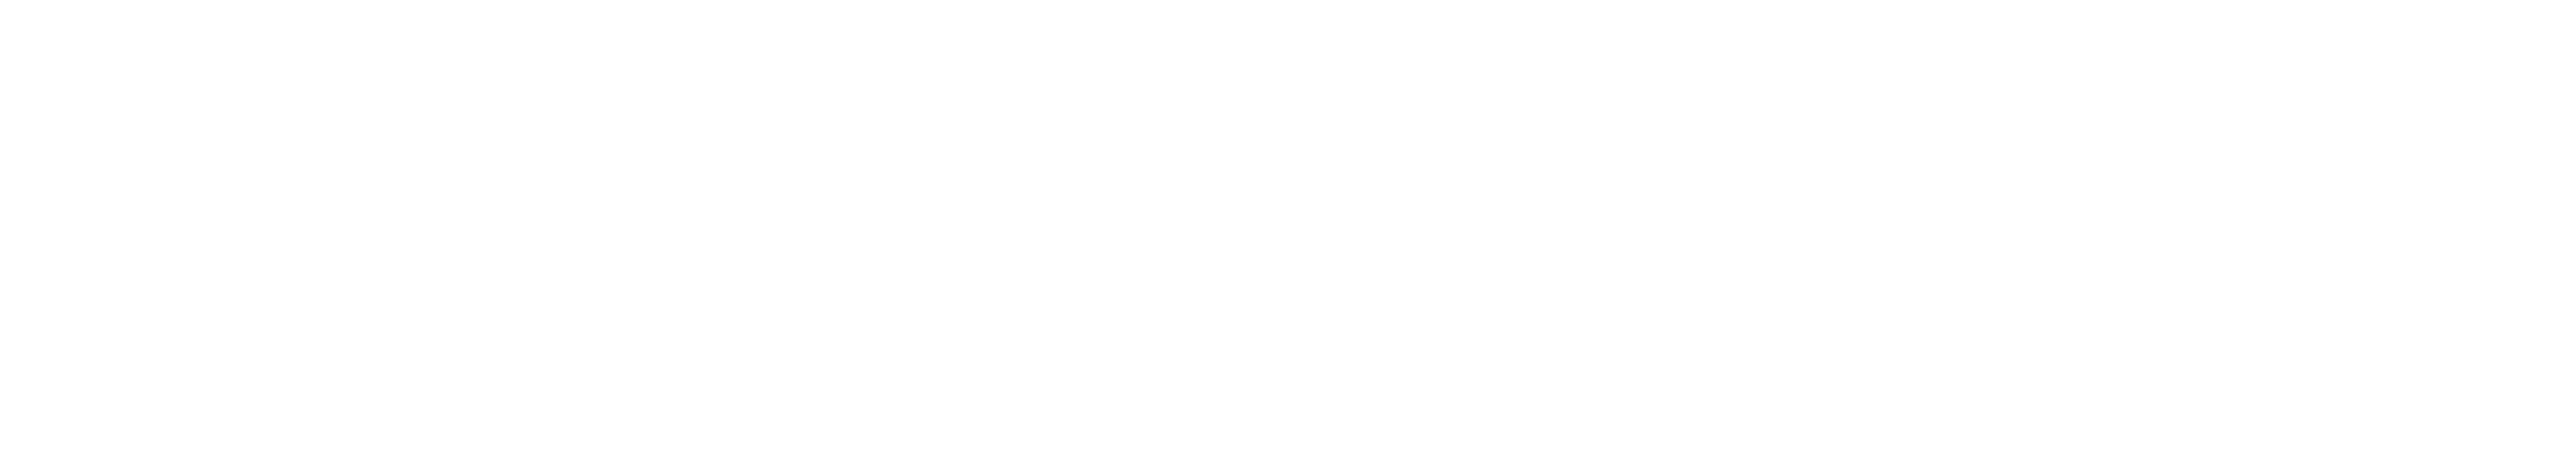 Michigan company